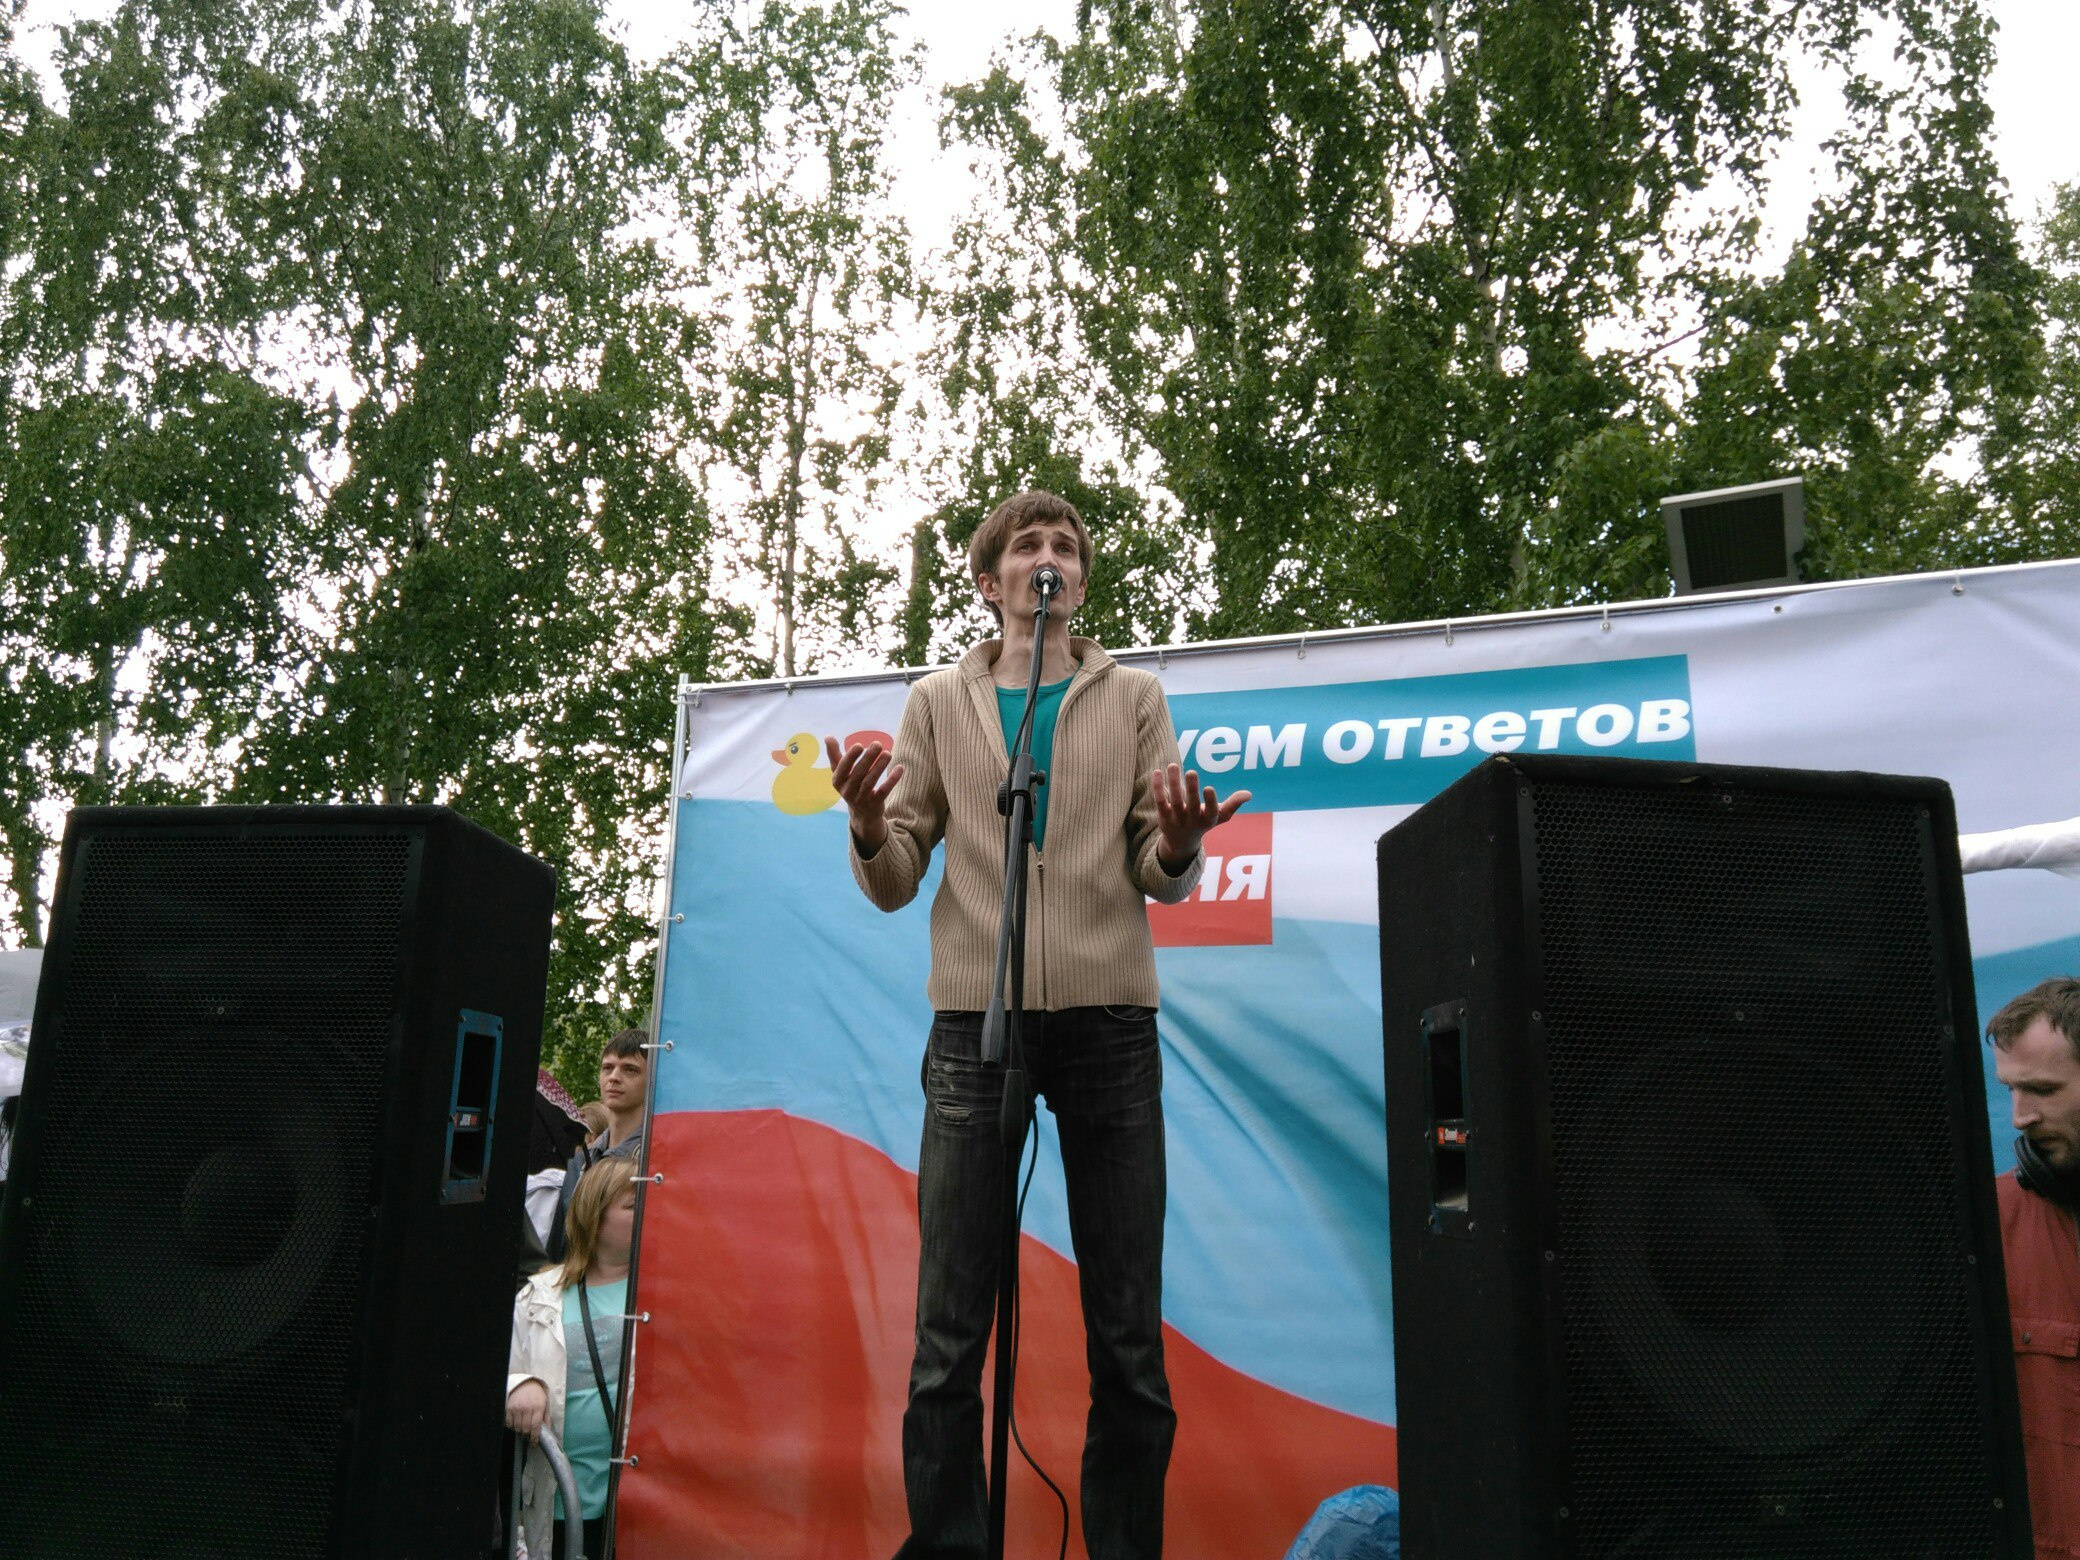 Юрий Бобров рассказал собравшимся о задержаниях в Москве. Тем временем появилась информация и о задержаниях в Перми